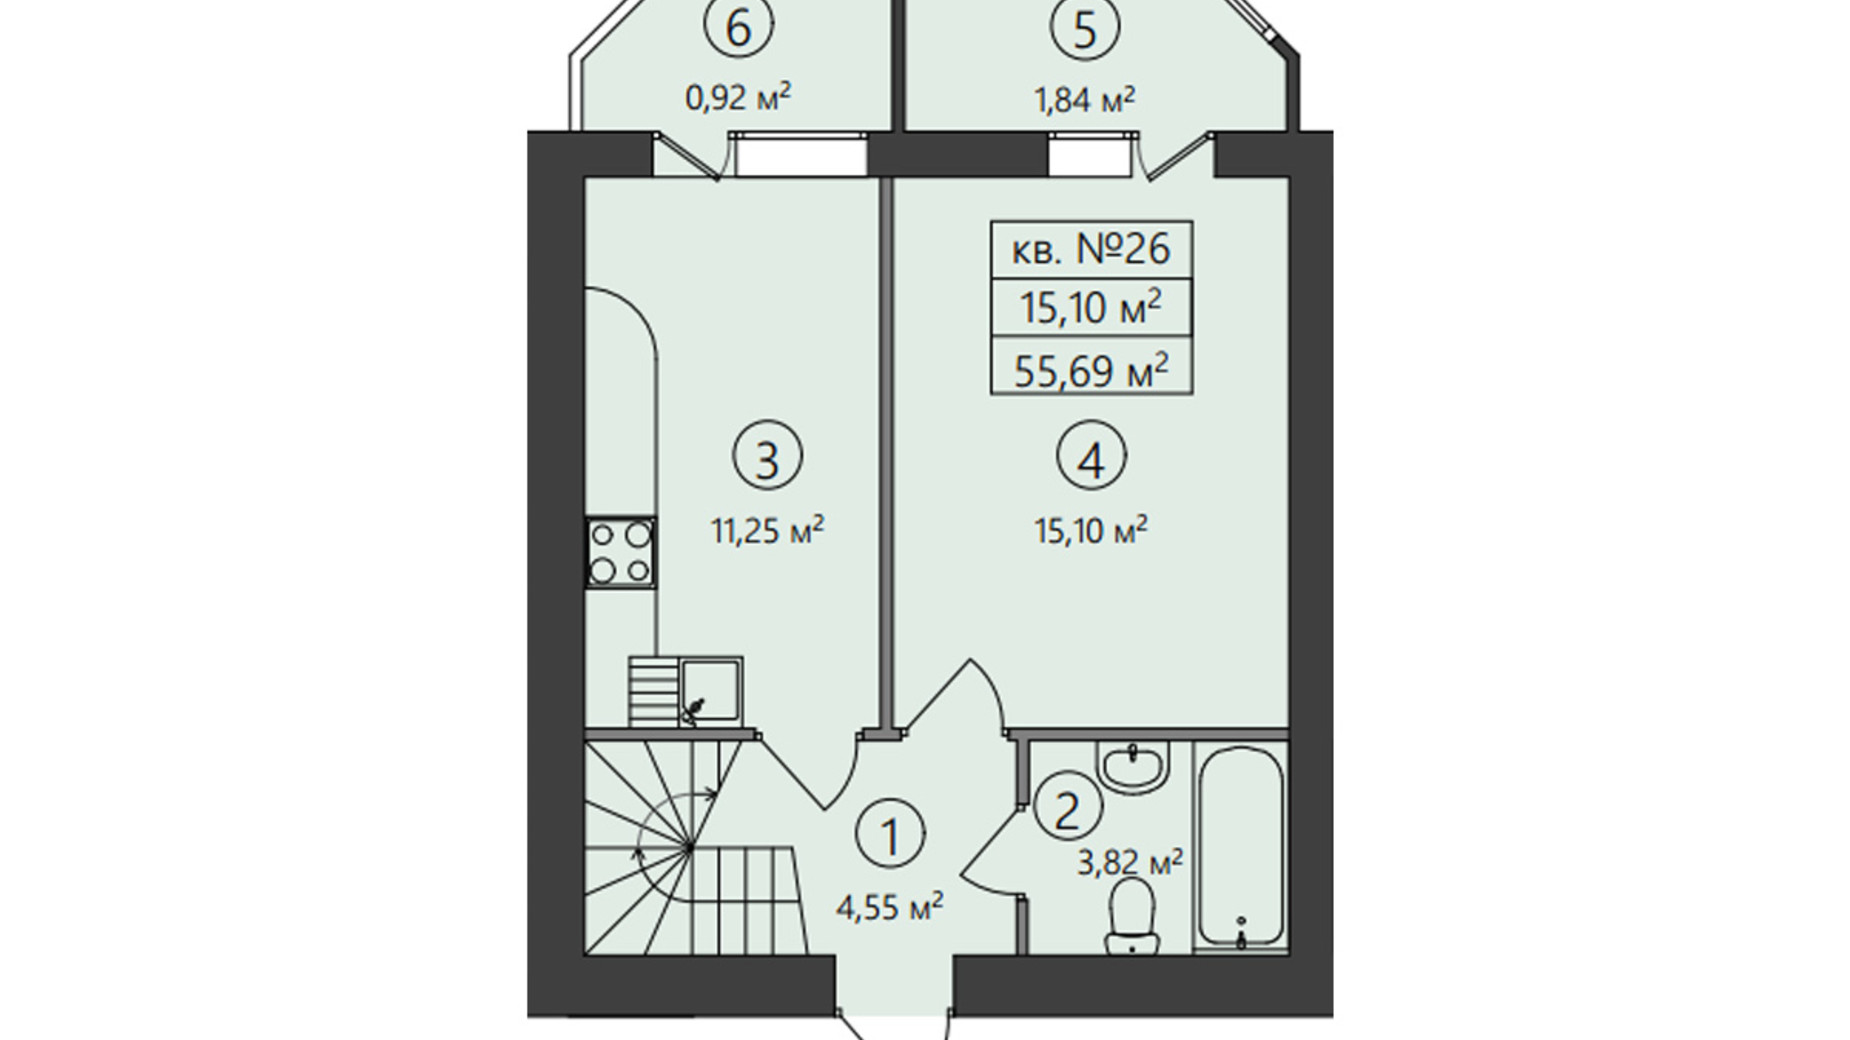 Планировка много­уровневой квартиры в ЖК Family-2 55.69 м², фото 428742